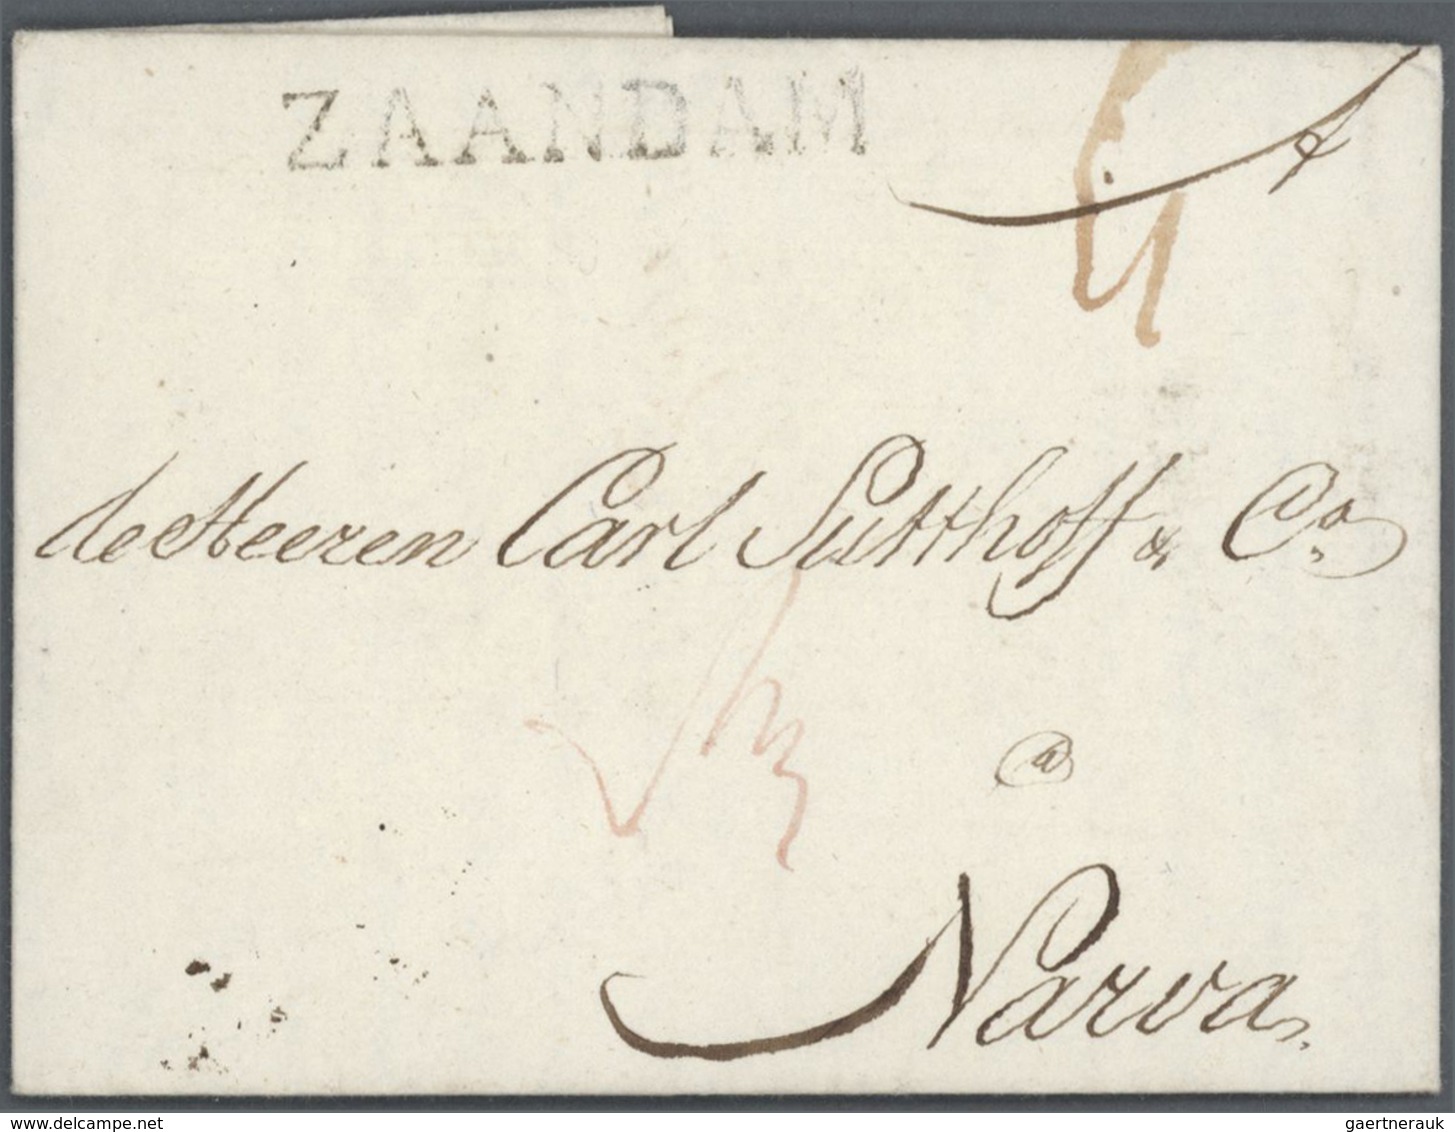 27405 Niederlande - Vorphilatelie: 1676- 1865 interessante vorphilatelistische Sammlung von 80 meist gut e